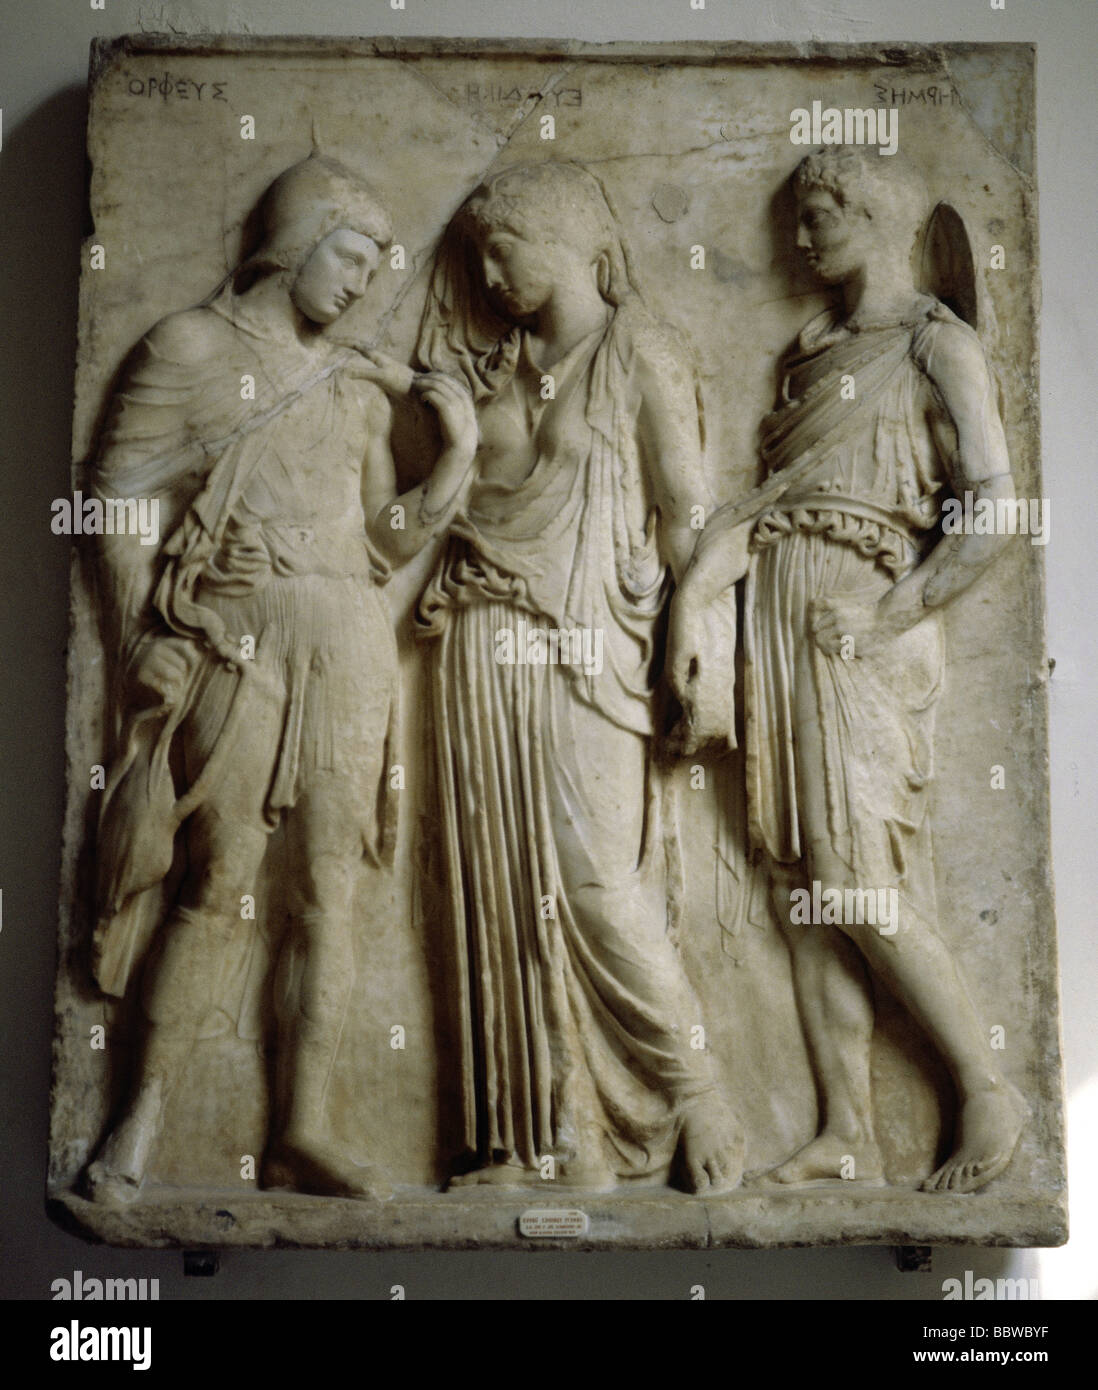 Hermes, der griechische Gott, mit Eurydice und Orpheus, Erleichterung, Marmor, 500 v. Chr., Archäologisches Nationalmuseum, Neapel, Stockfoto